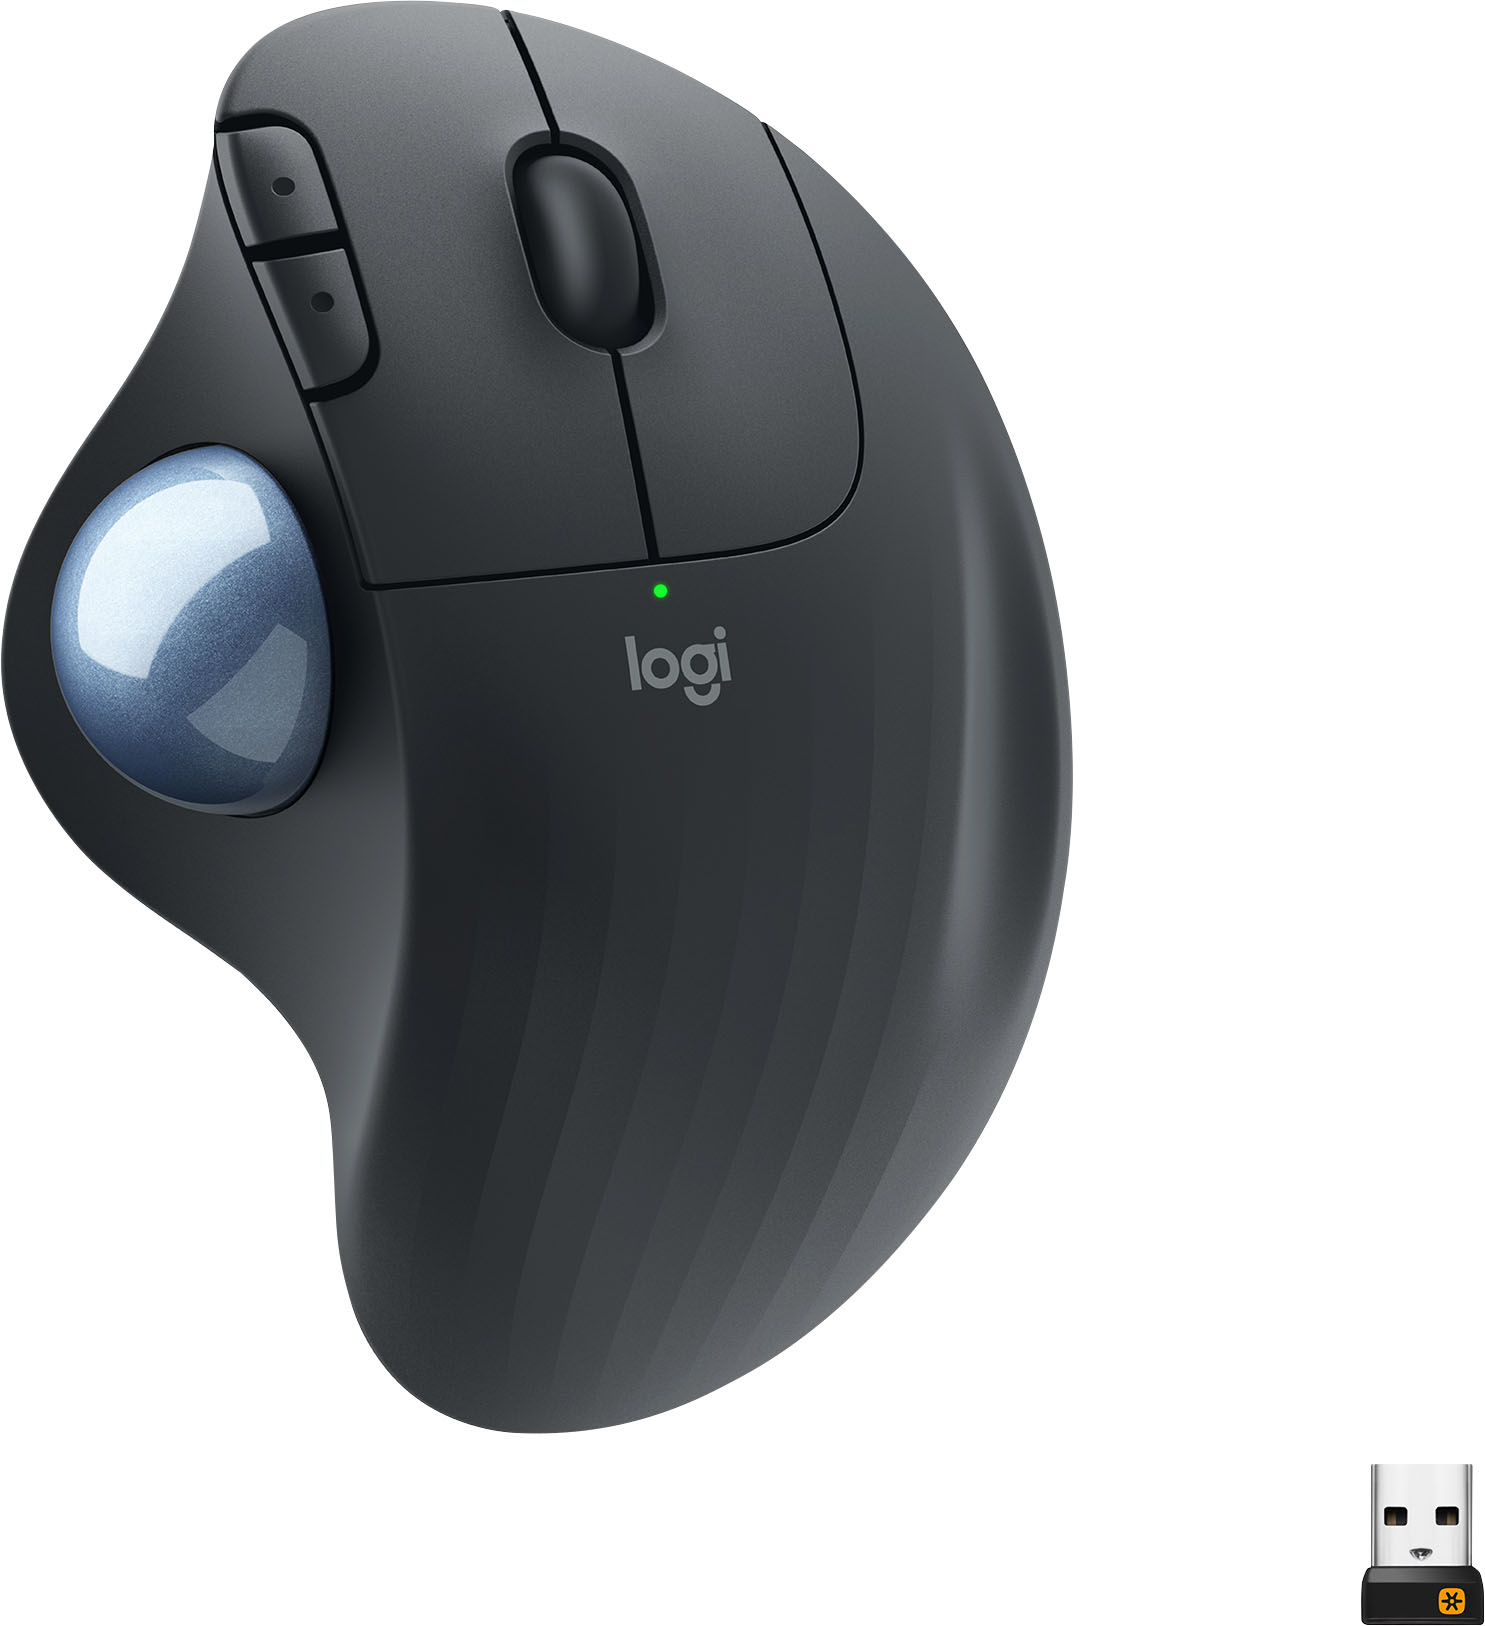 Logitech ERGO M575 Wireless Trackball Mouse Black 910-005869 - Best Buy